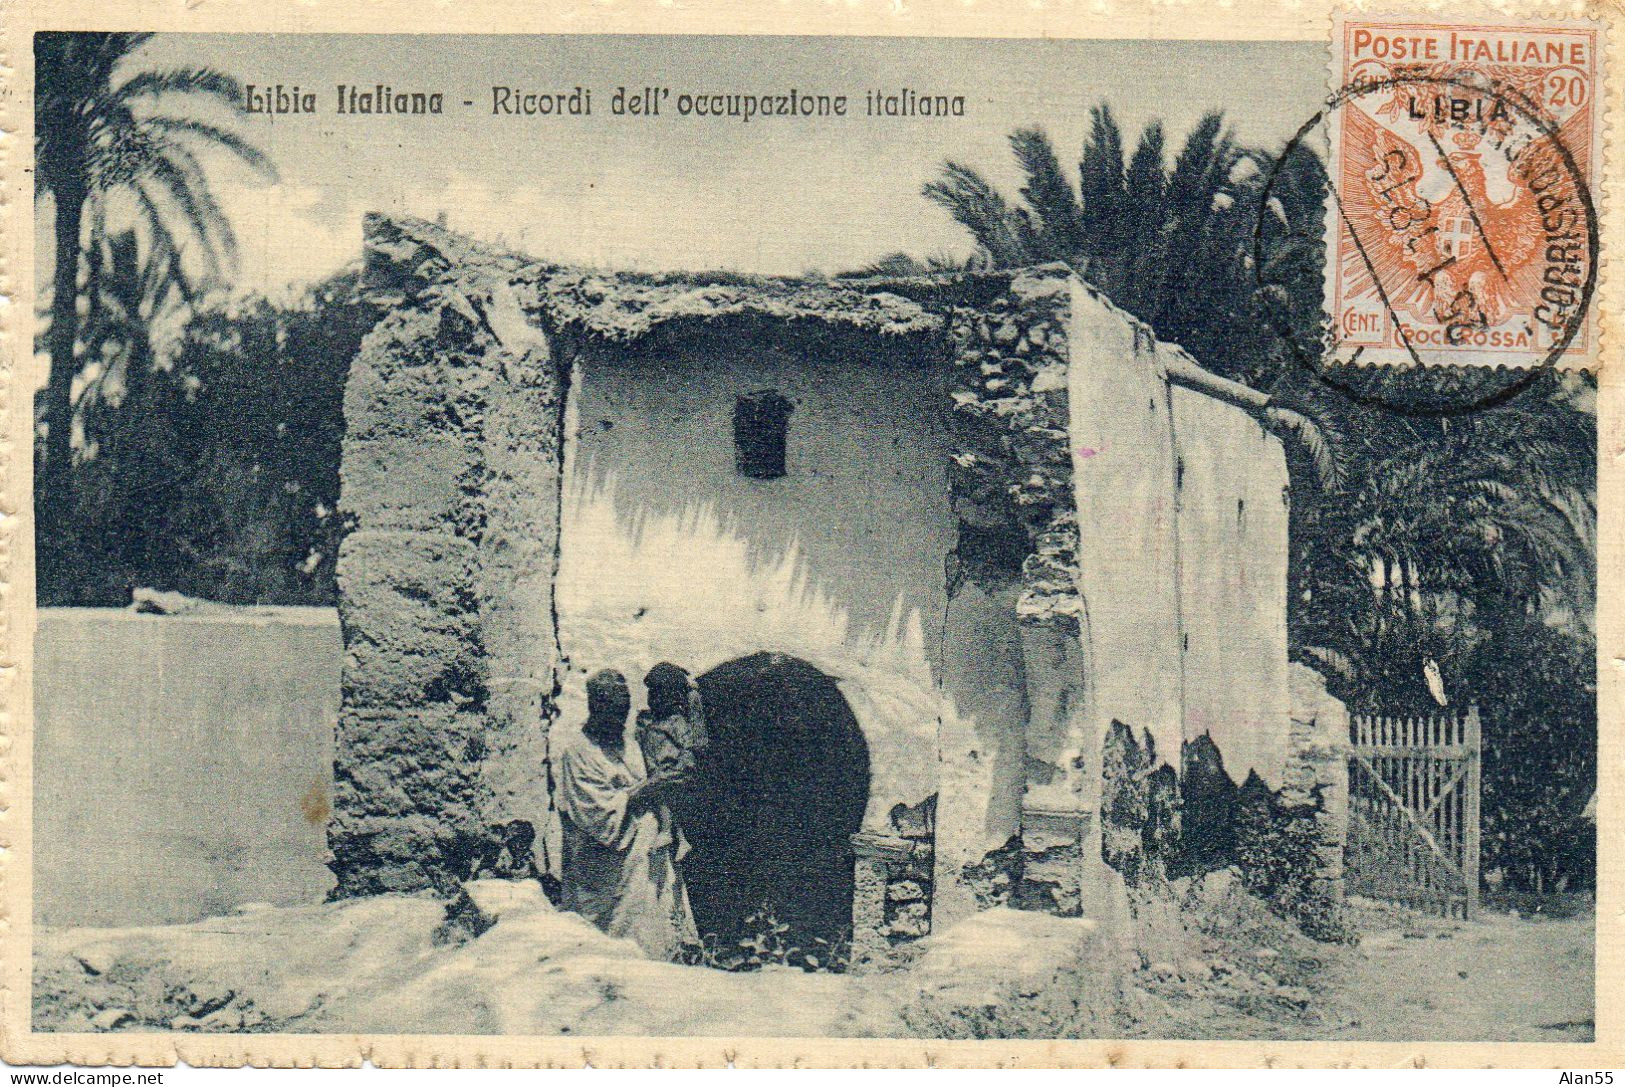 LIBYE-ITALIE.1918.CENSURE. "CROCE ROSSA" SURCHARGE "LIBIA". CROIX-ROUGE POUR LA FRANCE - Tripolitania